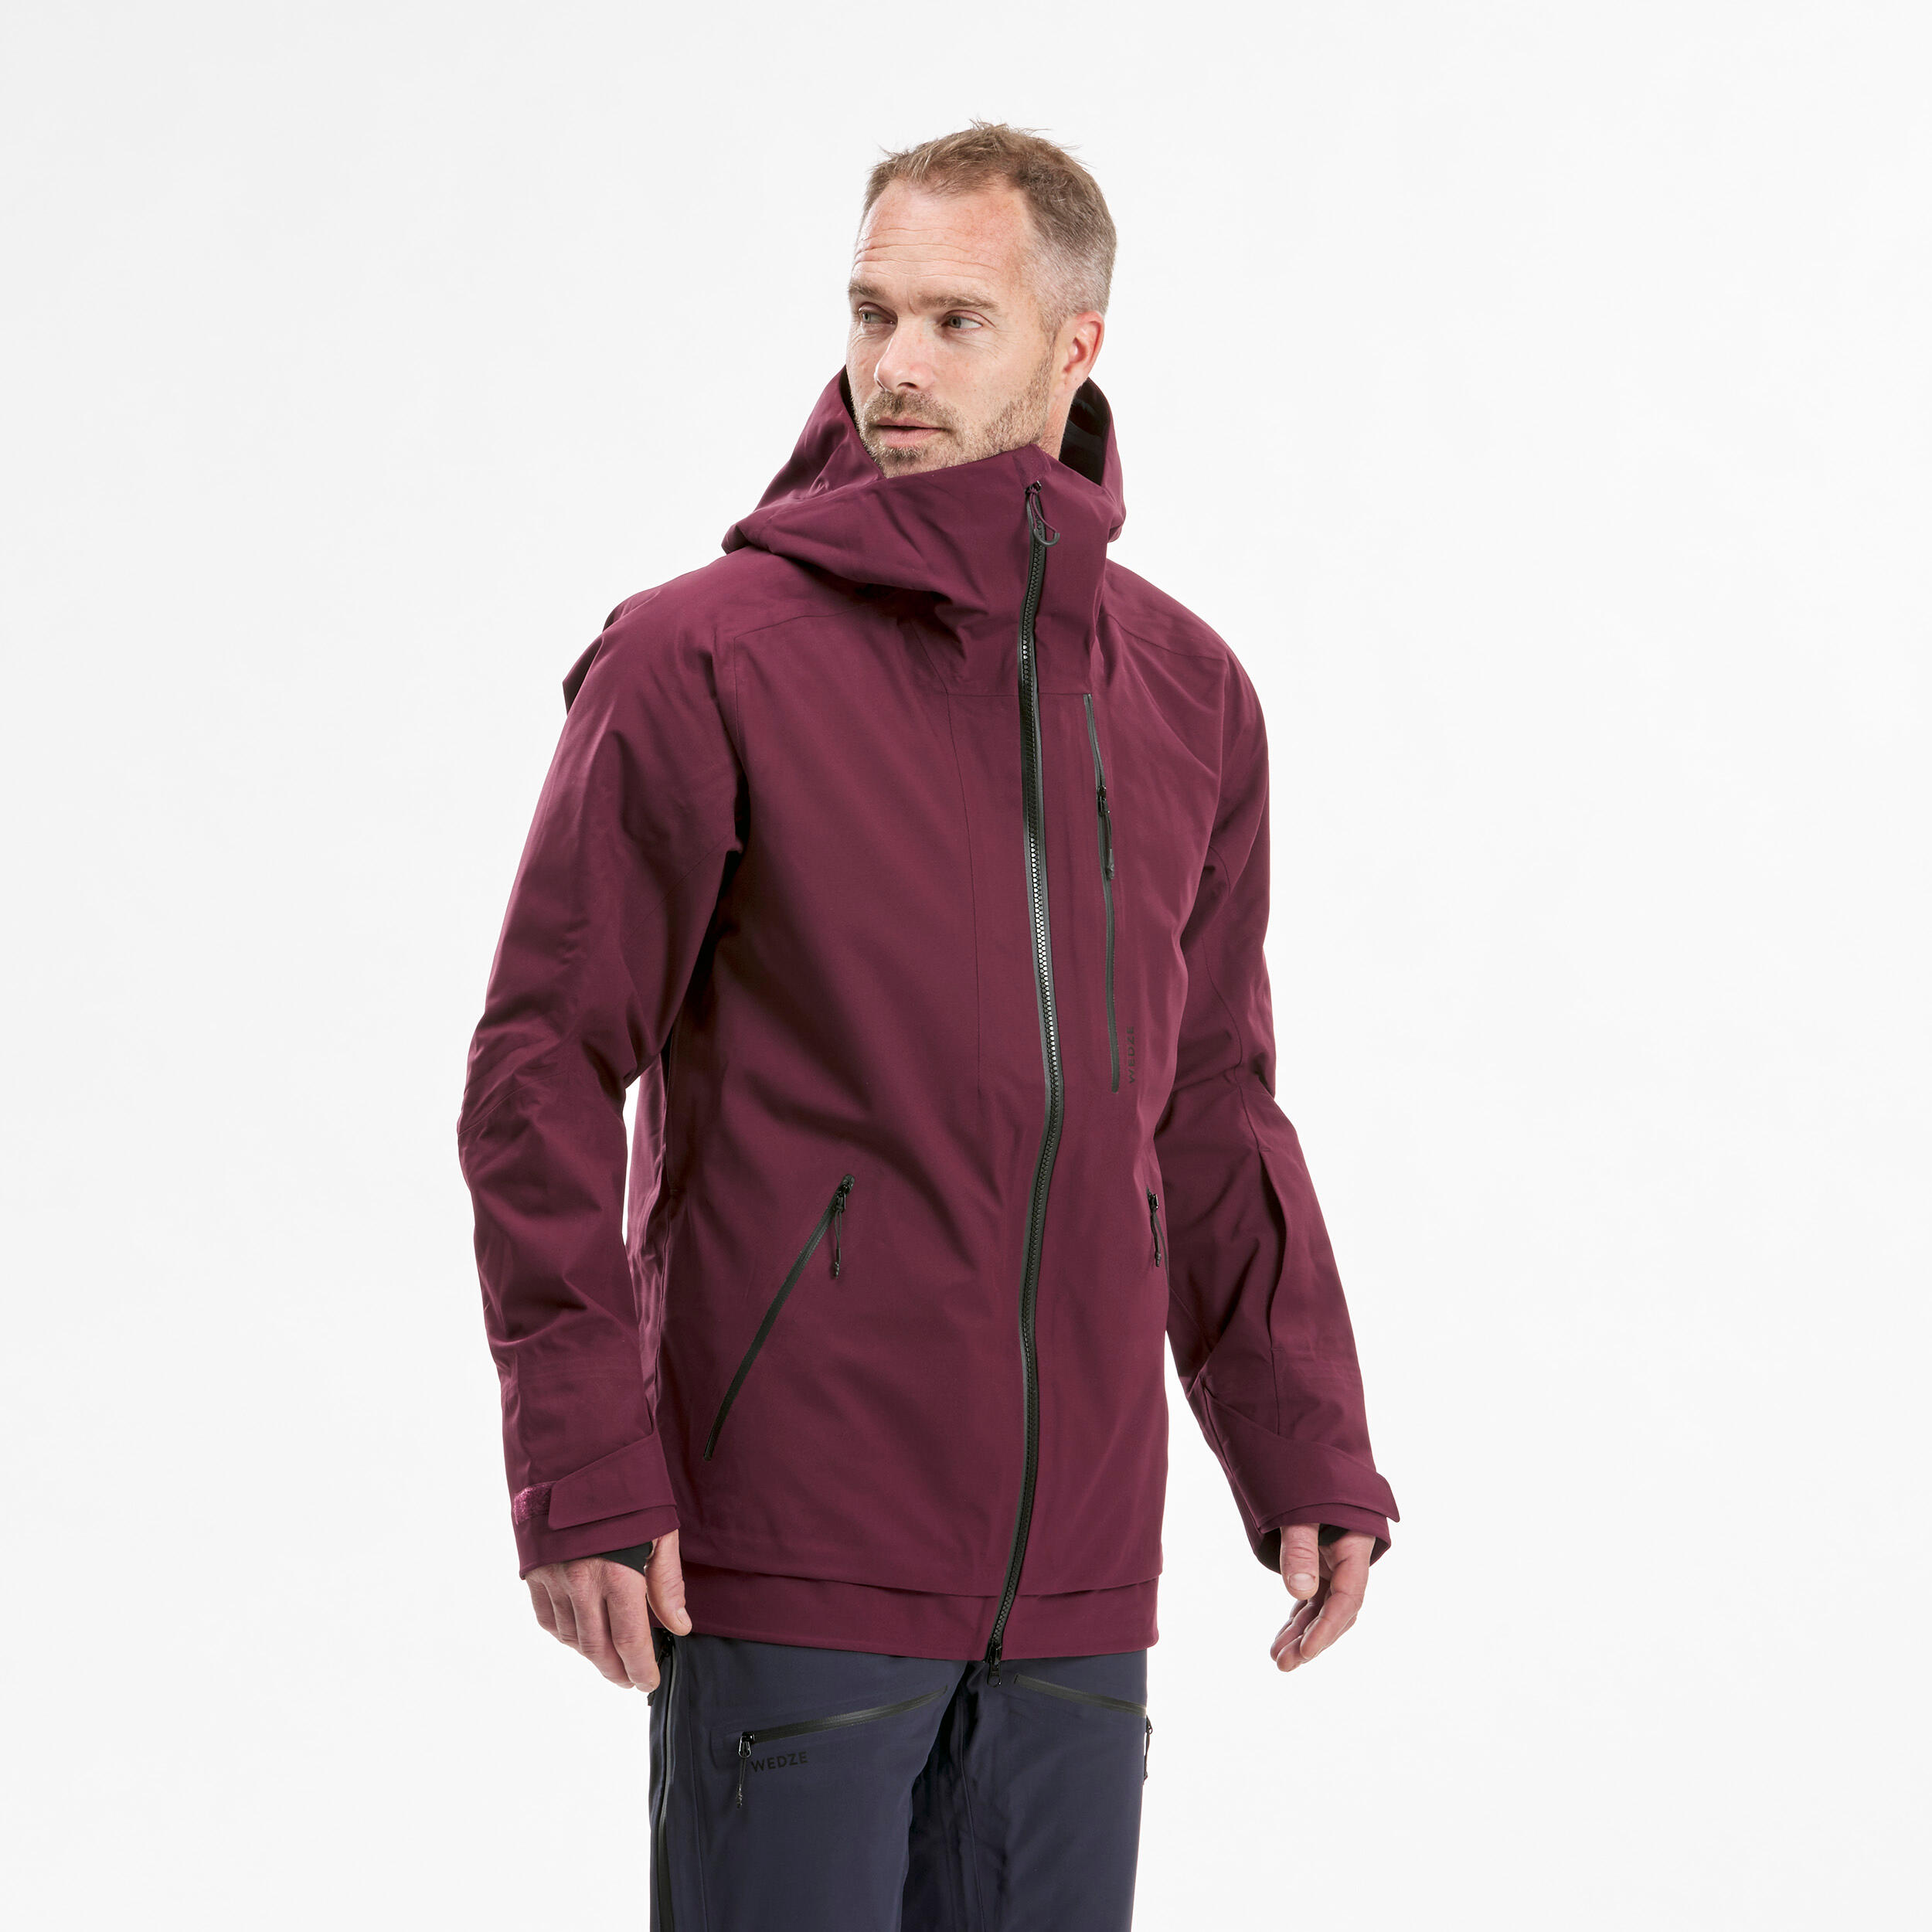 Men's Ski Jacket - FR500 - Bordeaux 6/15